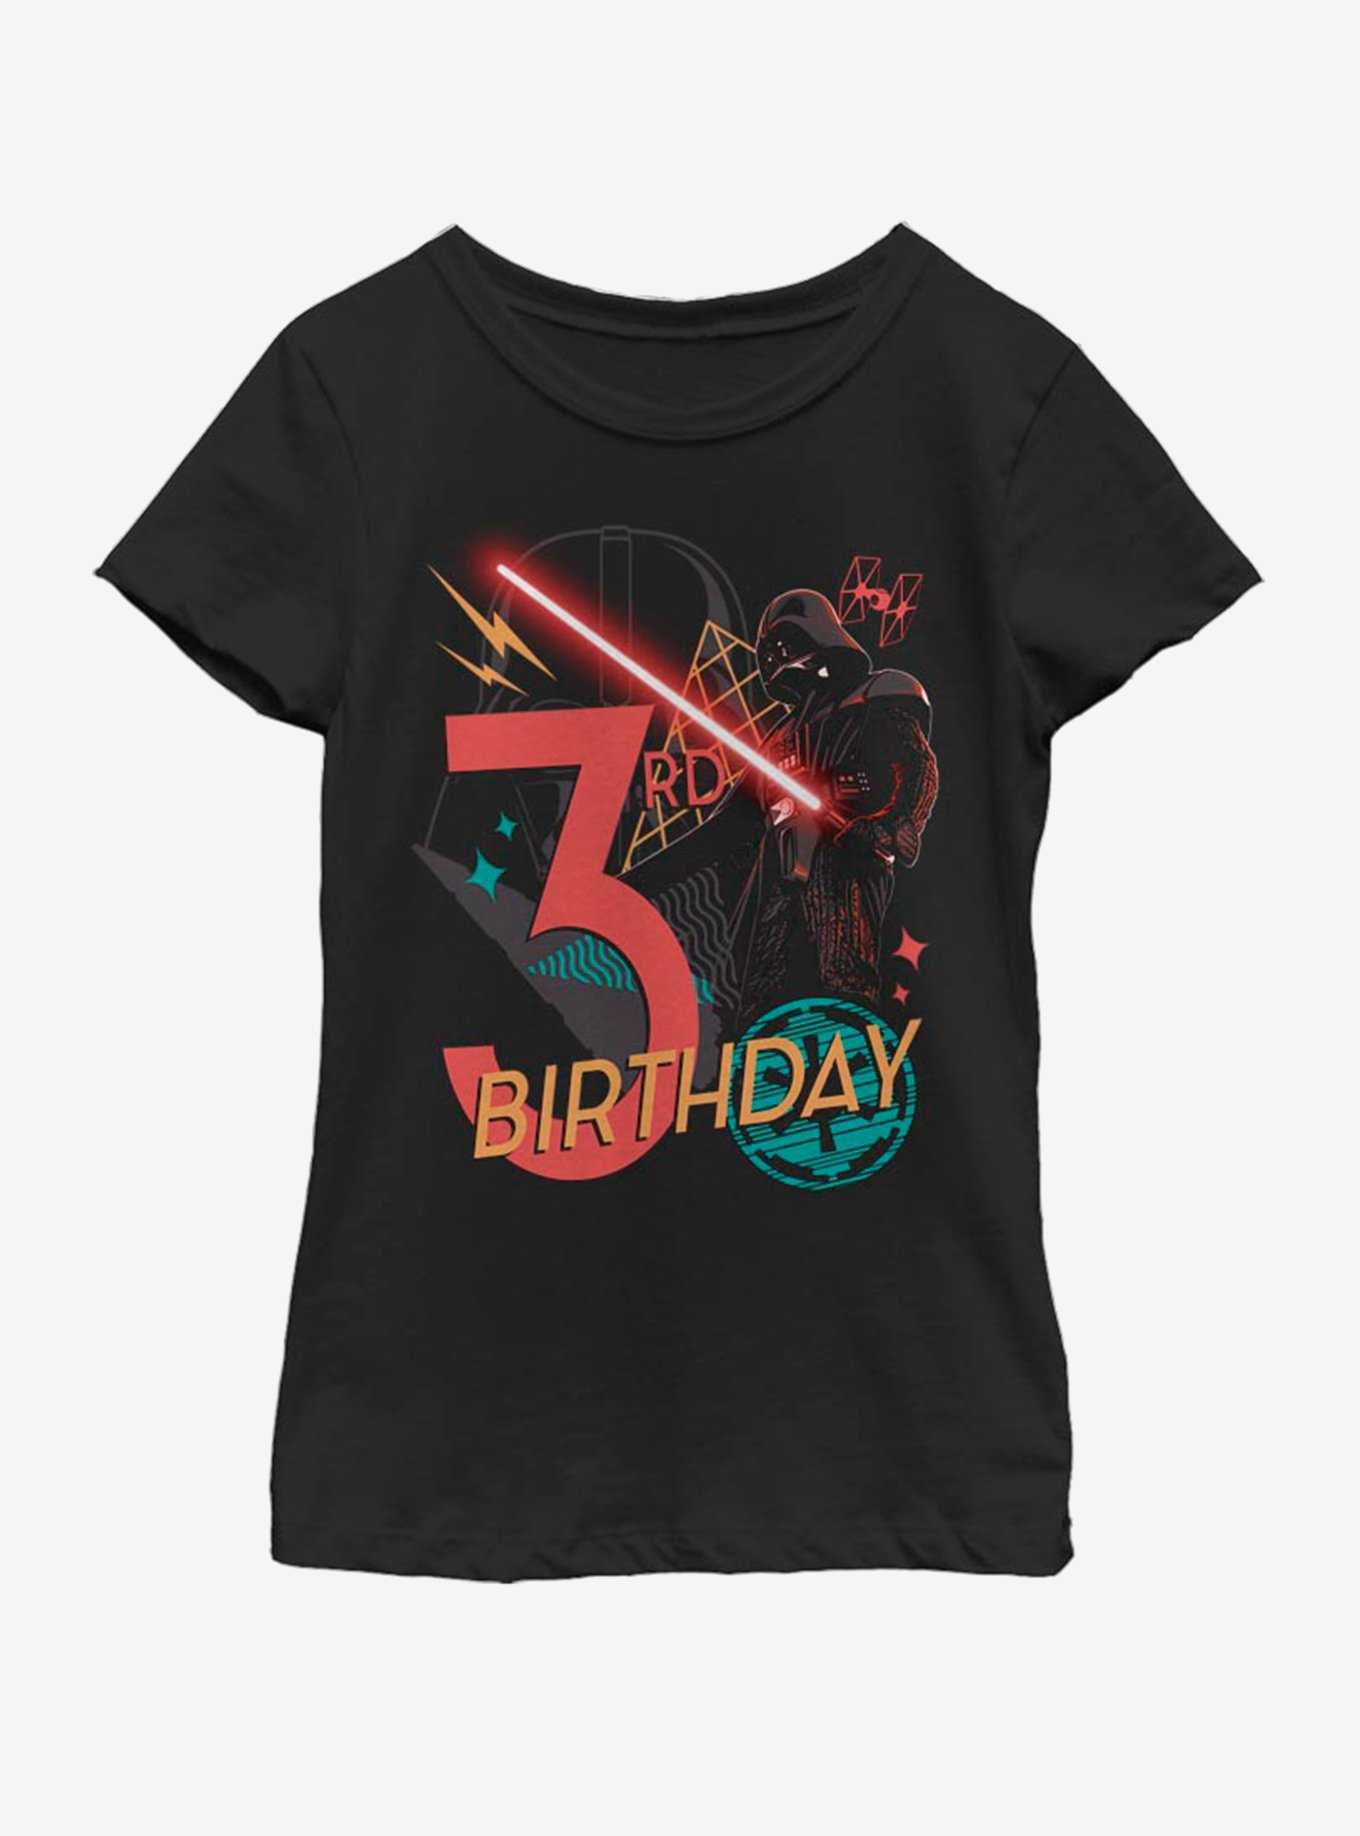 Star Wars Vader 3rd Bday Youth Girls T-Shirt, , hi-res